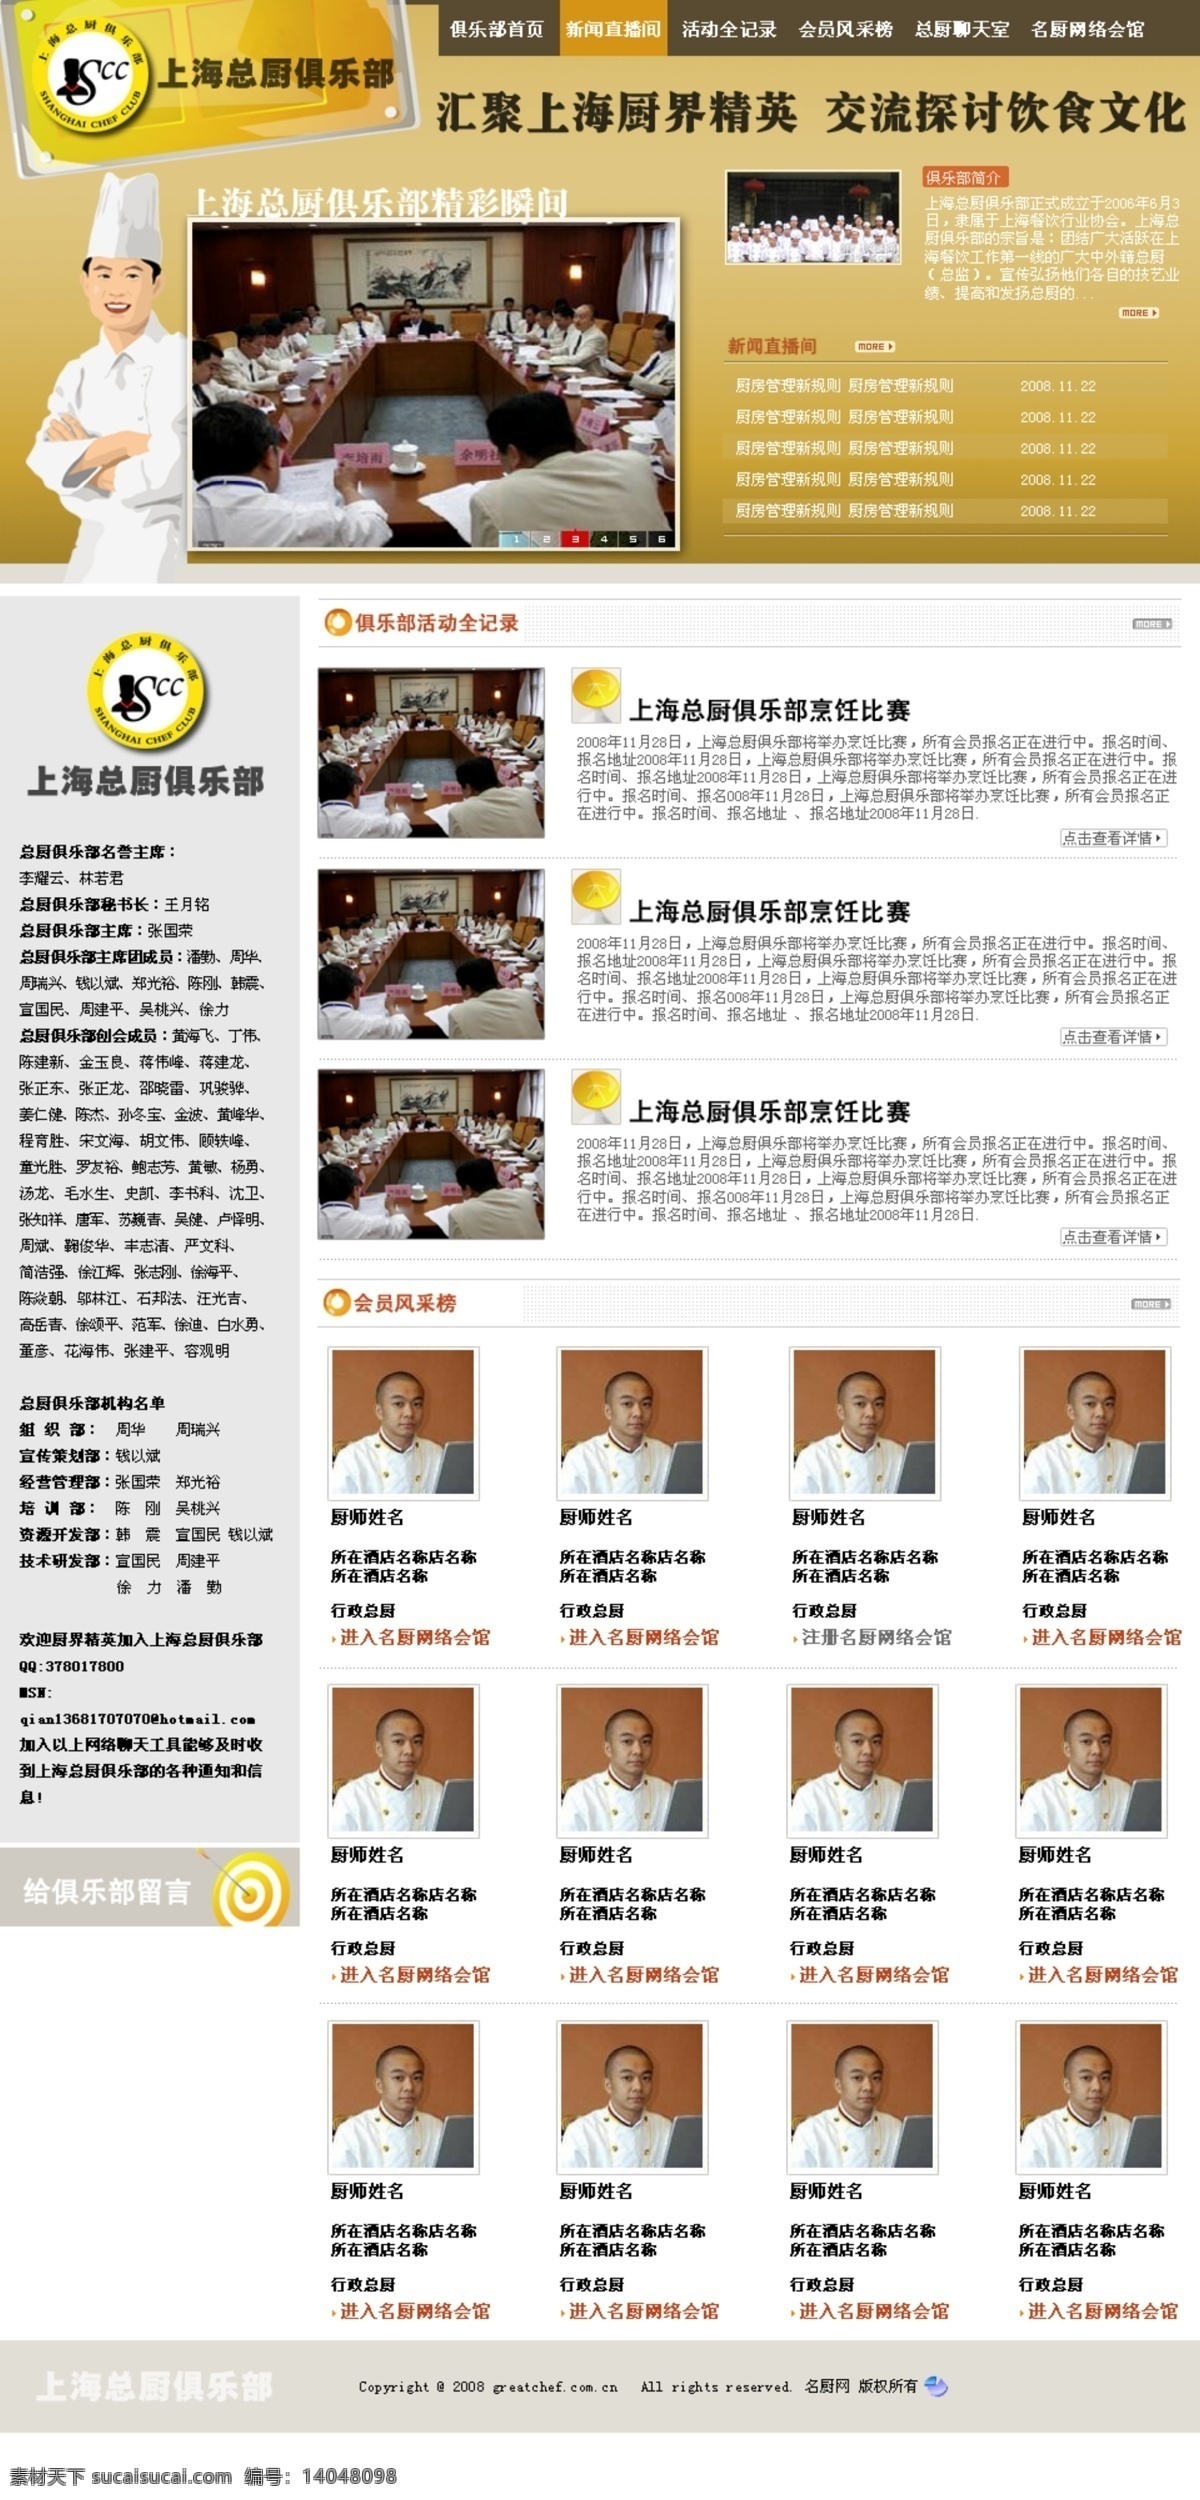 上海 总 厨 俱乐部 网页设计 厨师 网页模板 源文件库 中文模版 总厨 网页素材